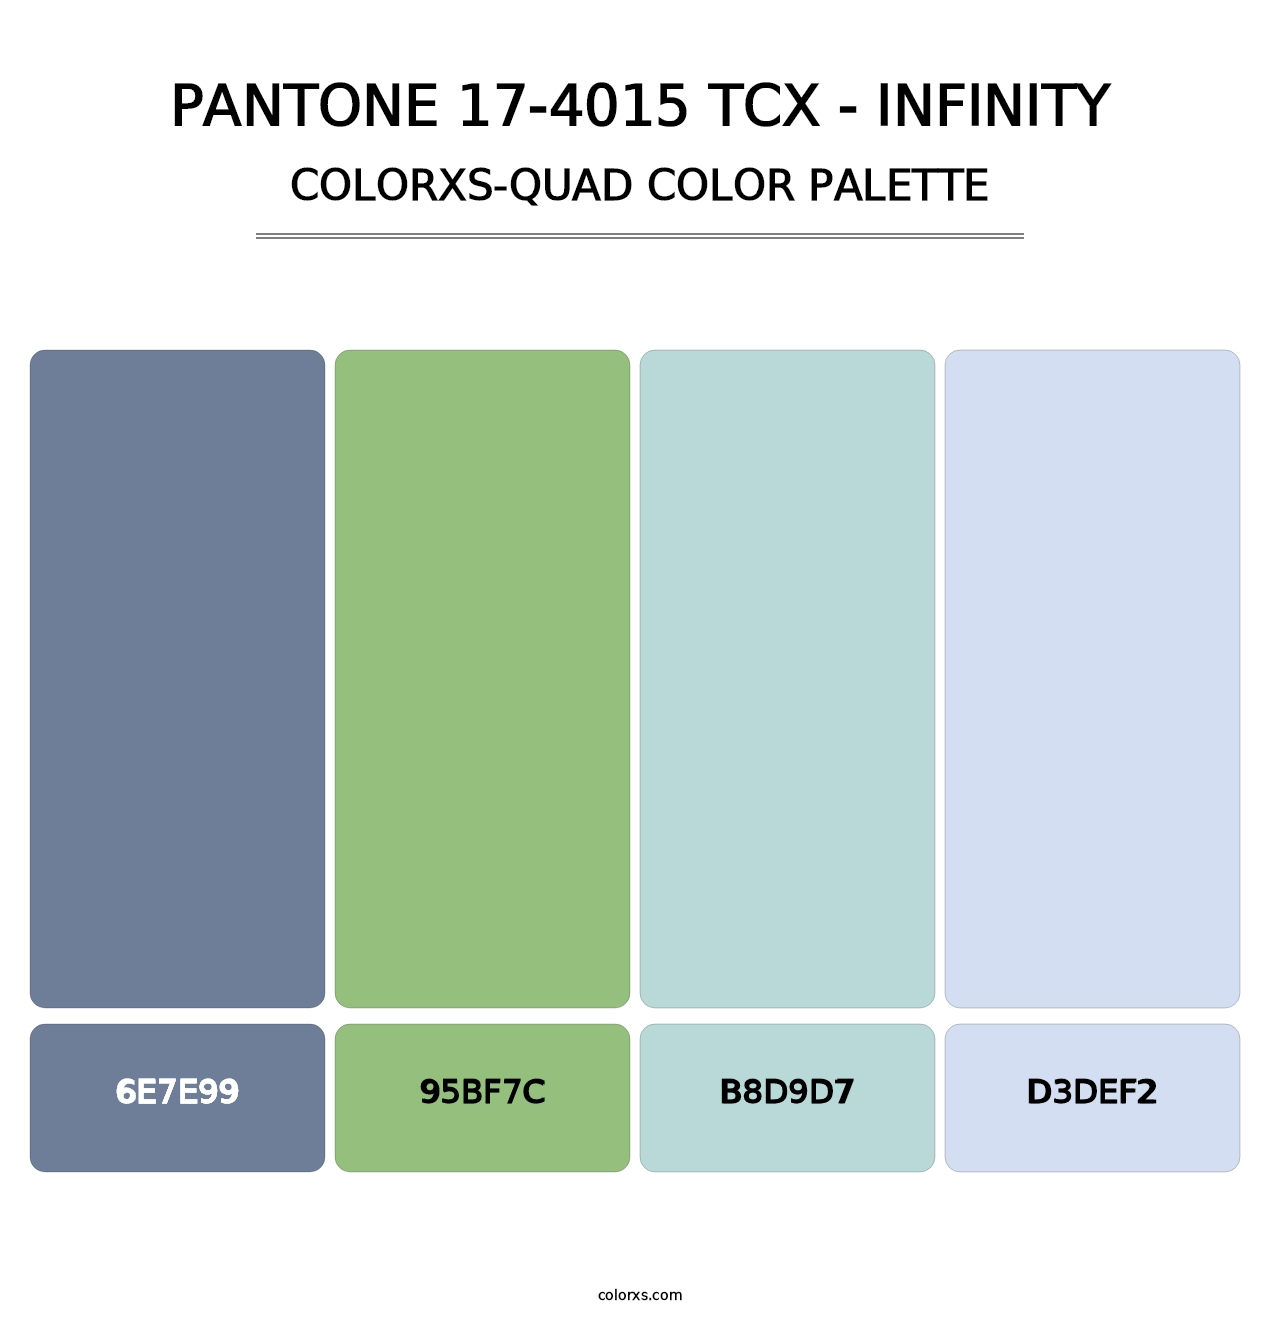 PANTONE 17-4015 TCX - Infinity - Colorxs Quad Palette